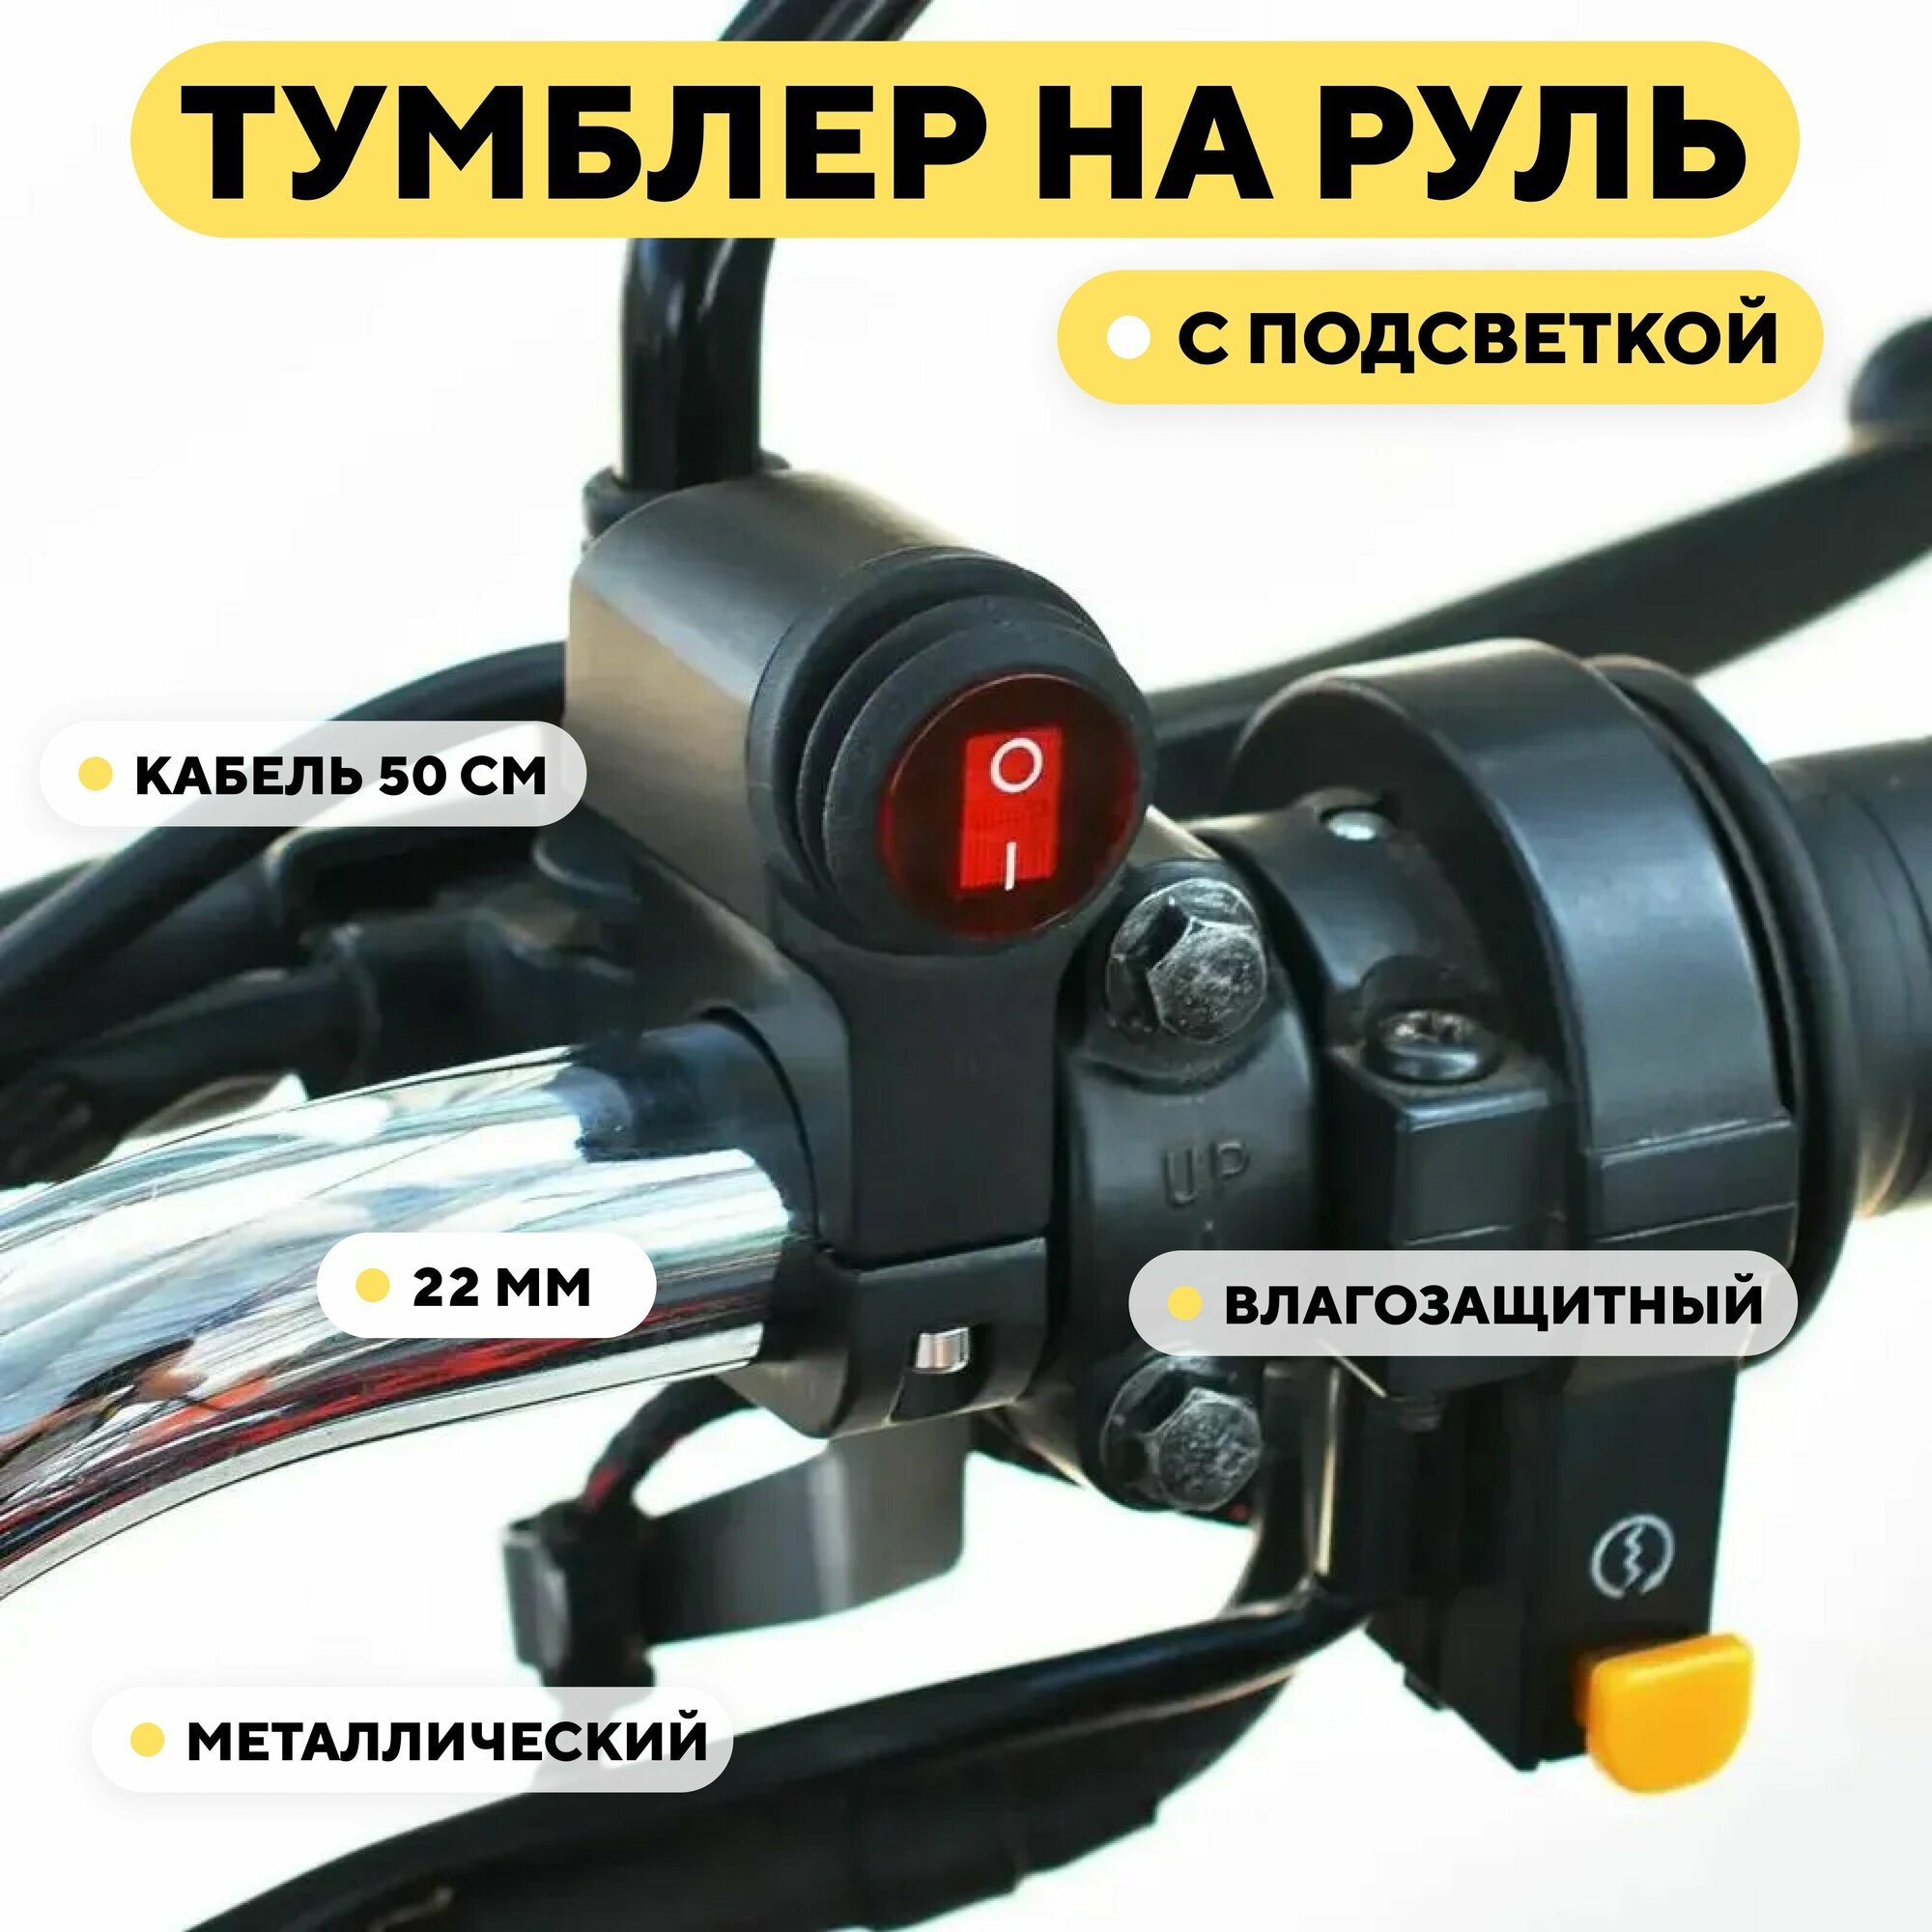 Универсальный переключатель для руля мотоцикла с подсветкой, кнопка вкл/выкл (красный)